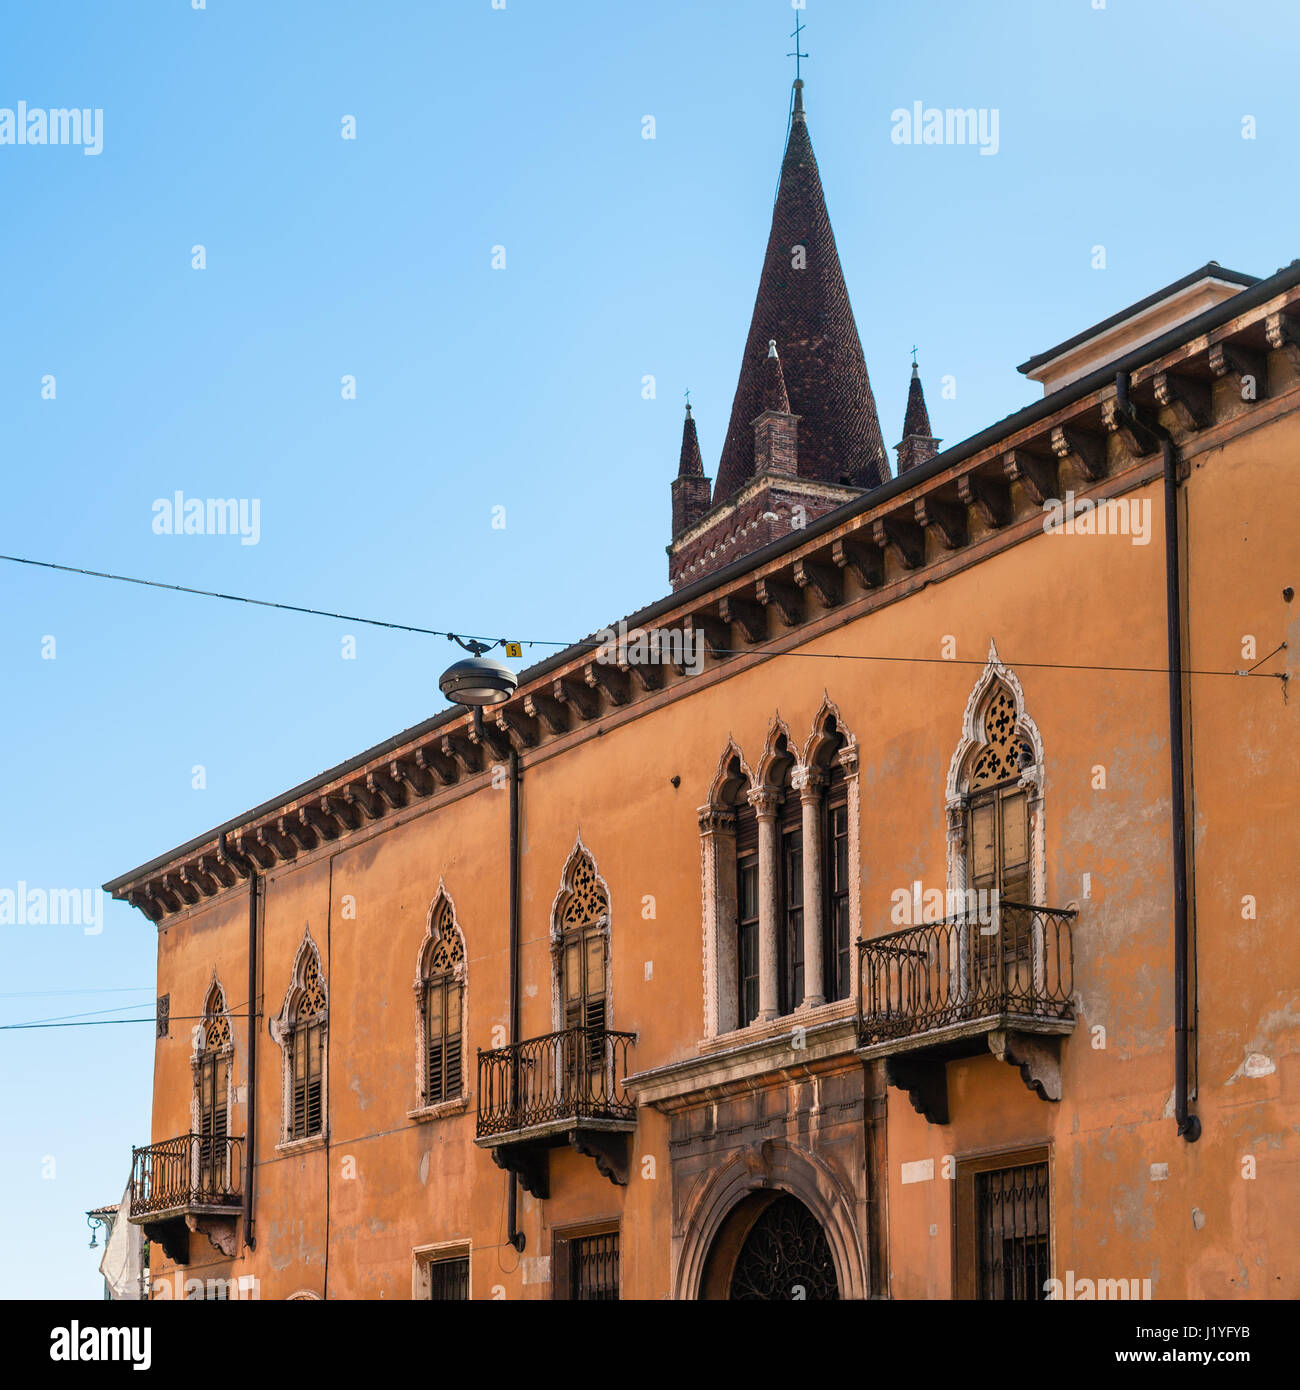 Voyage d'Italie - vue de maison urbaine sur la rue Via Leoni et tour de Chiesa di San Fermo Maggiore à Vérone ville au printemps Banque D'Images